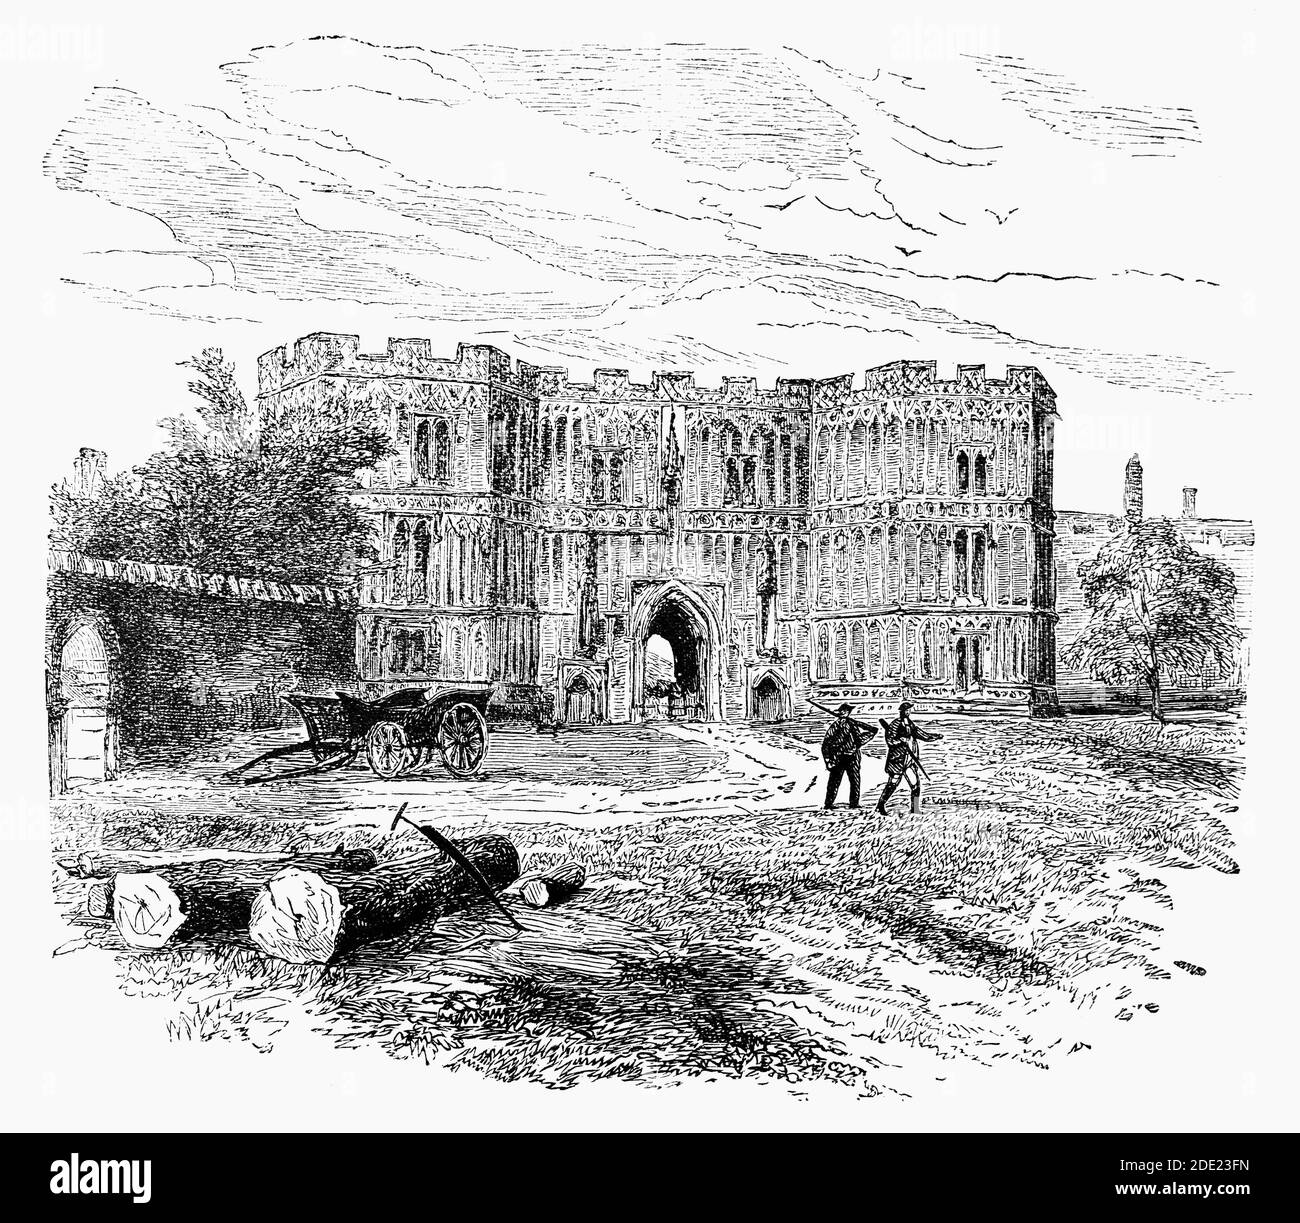 Eine Ansicht des Torhauses der Abtei von St. Osyth (auch bekannt als Priorat von St. Osyth) aus dem späten 15. Jahrhundert aus dem 19. Jahrhundert, ein schönes Beispiel für dekorative Feuerstein, ist es der bedeutendste Überrest der ursprünglichen Klosterstrukturen, die noch stehen. Ein Haus der Augustiner Kanonen in Essex, England wurde es von Richard de Belmeis, Bischof von London, c. 1121. Der erste Prior des hl. Osyth war William de Corbeil, der 1123 zum Erzbischof von Canterbury gewählt wurde und 1135 König Stephan gekrönt hatte. Stockfoto